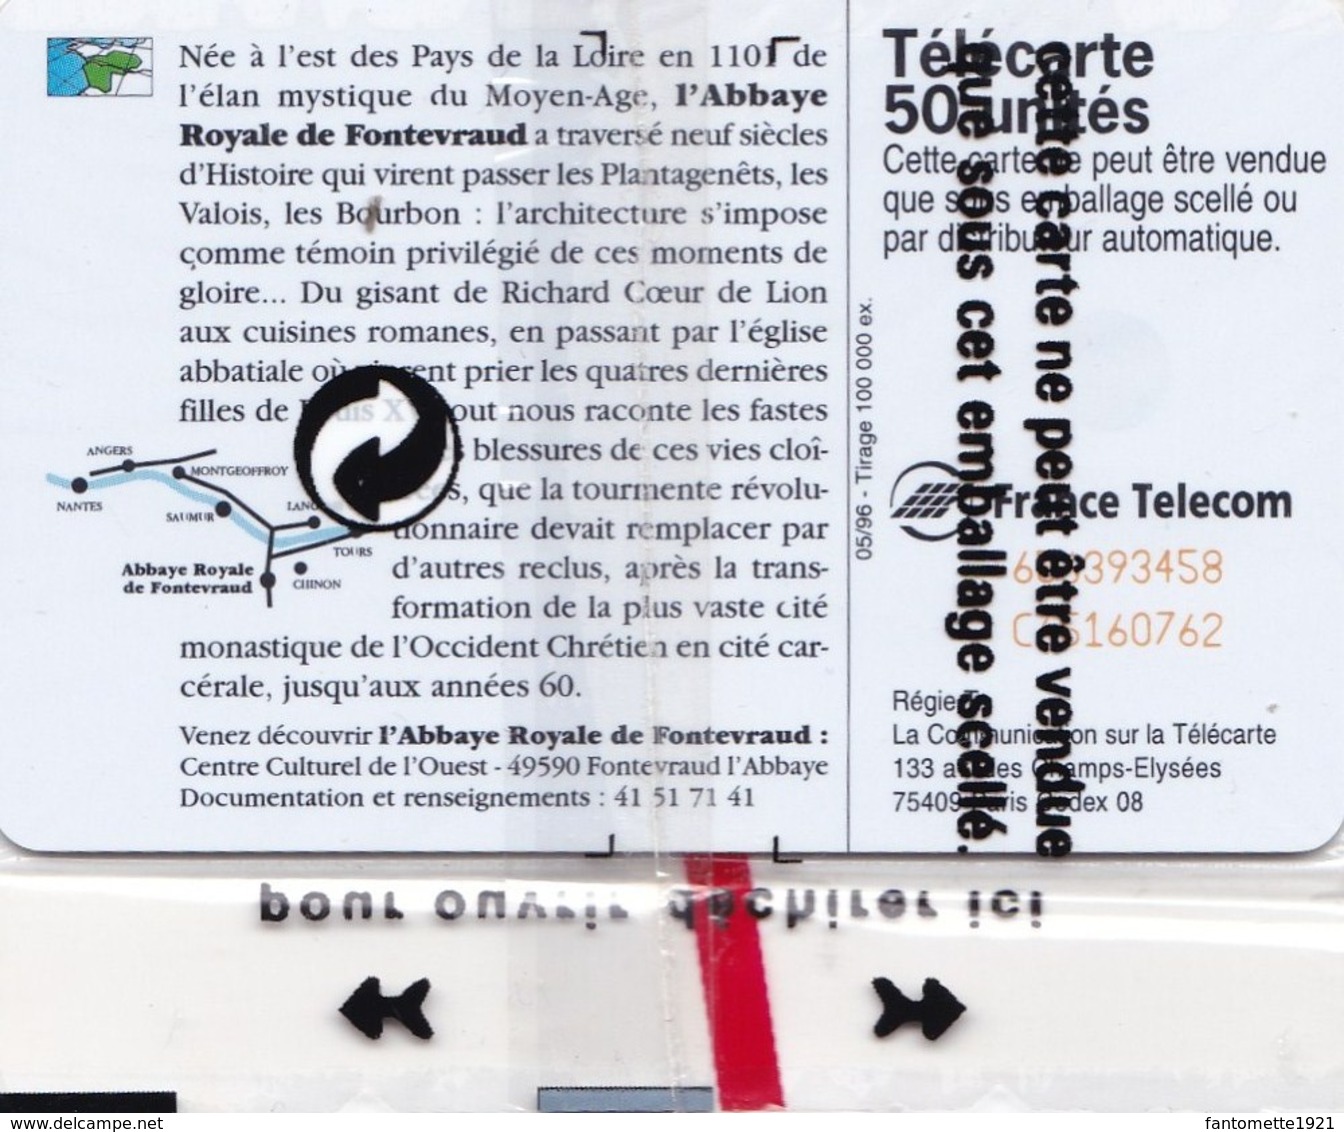 TELECARTE 50 NSB  REGION DES PAYS DE LA LOIRE  NSB(dil372) - 50 Einheiten